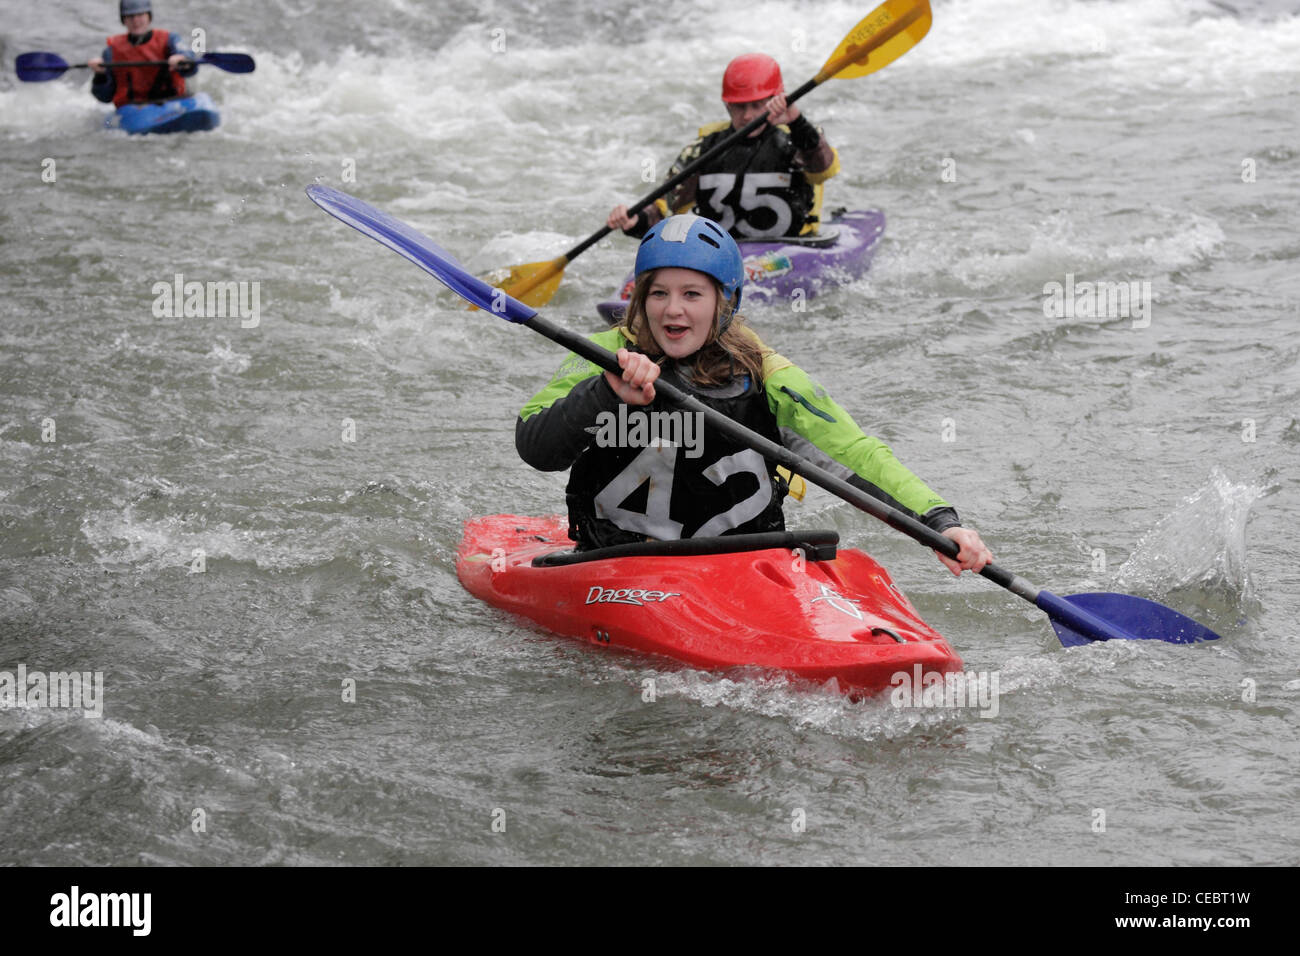 Femme fille canoéiste prenant part à la concurrence inter university sur la rivière Exe Exeter 4/2/12 Tournage sur un barrage Banque D'Images